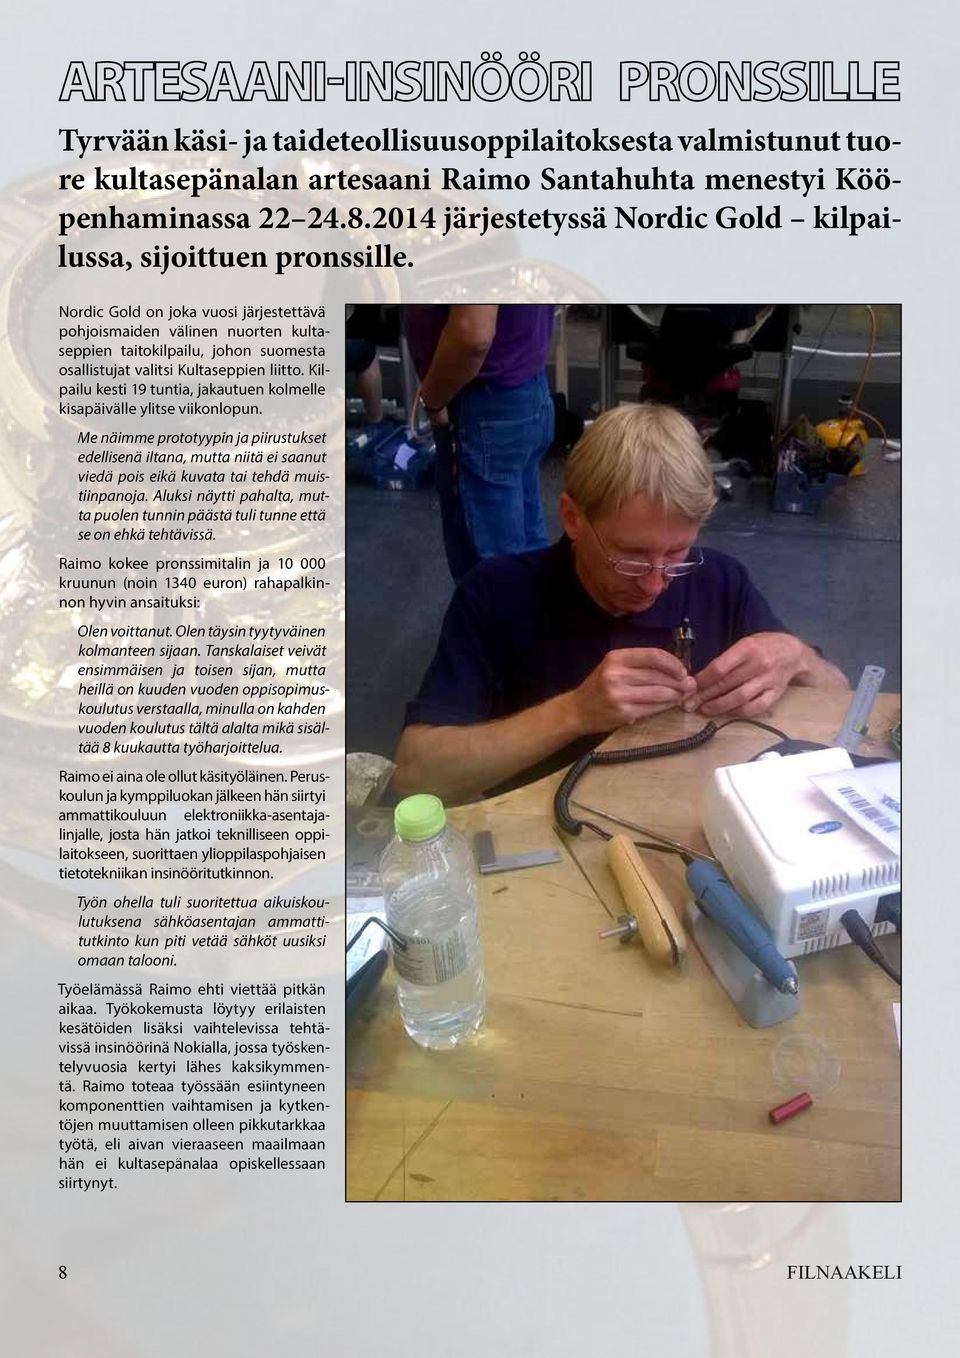 Nordic Gold on joka vuosi järjestettävä pohjoismaiden välinen nuorten kultaseppien taitokilpailu, johon suomesta osallistujat valitsi Kultaseppien liitto.